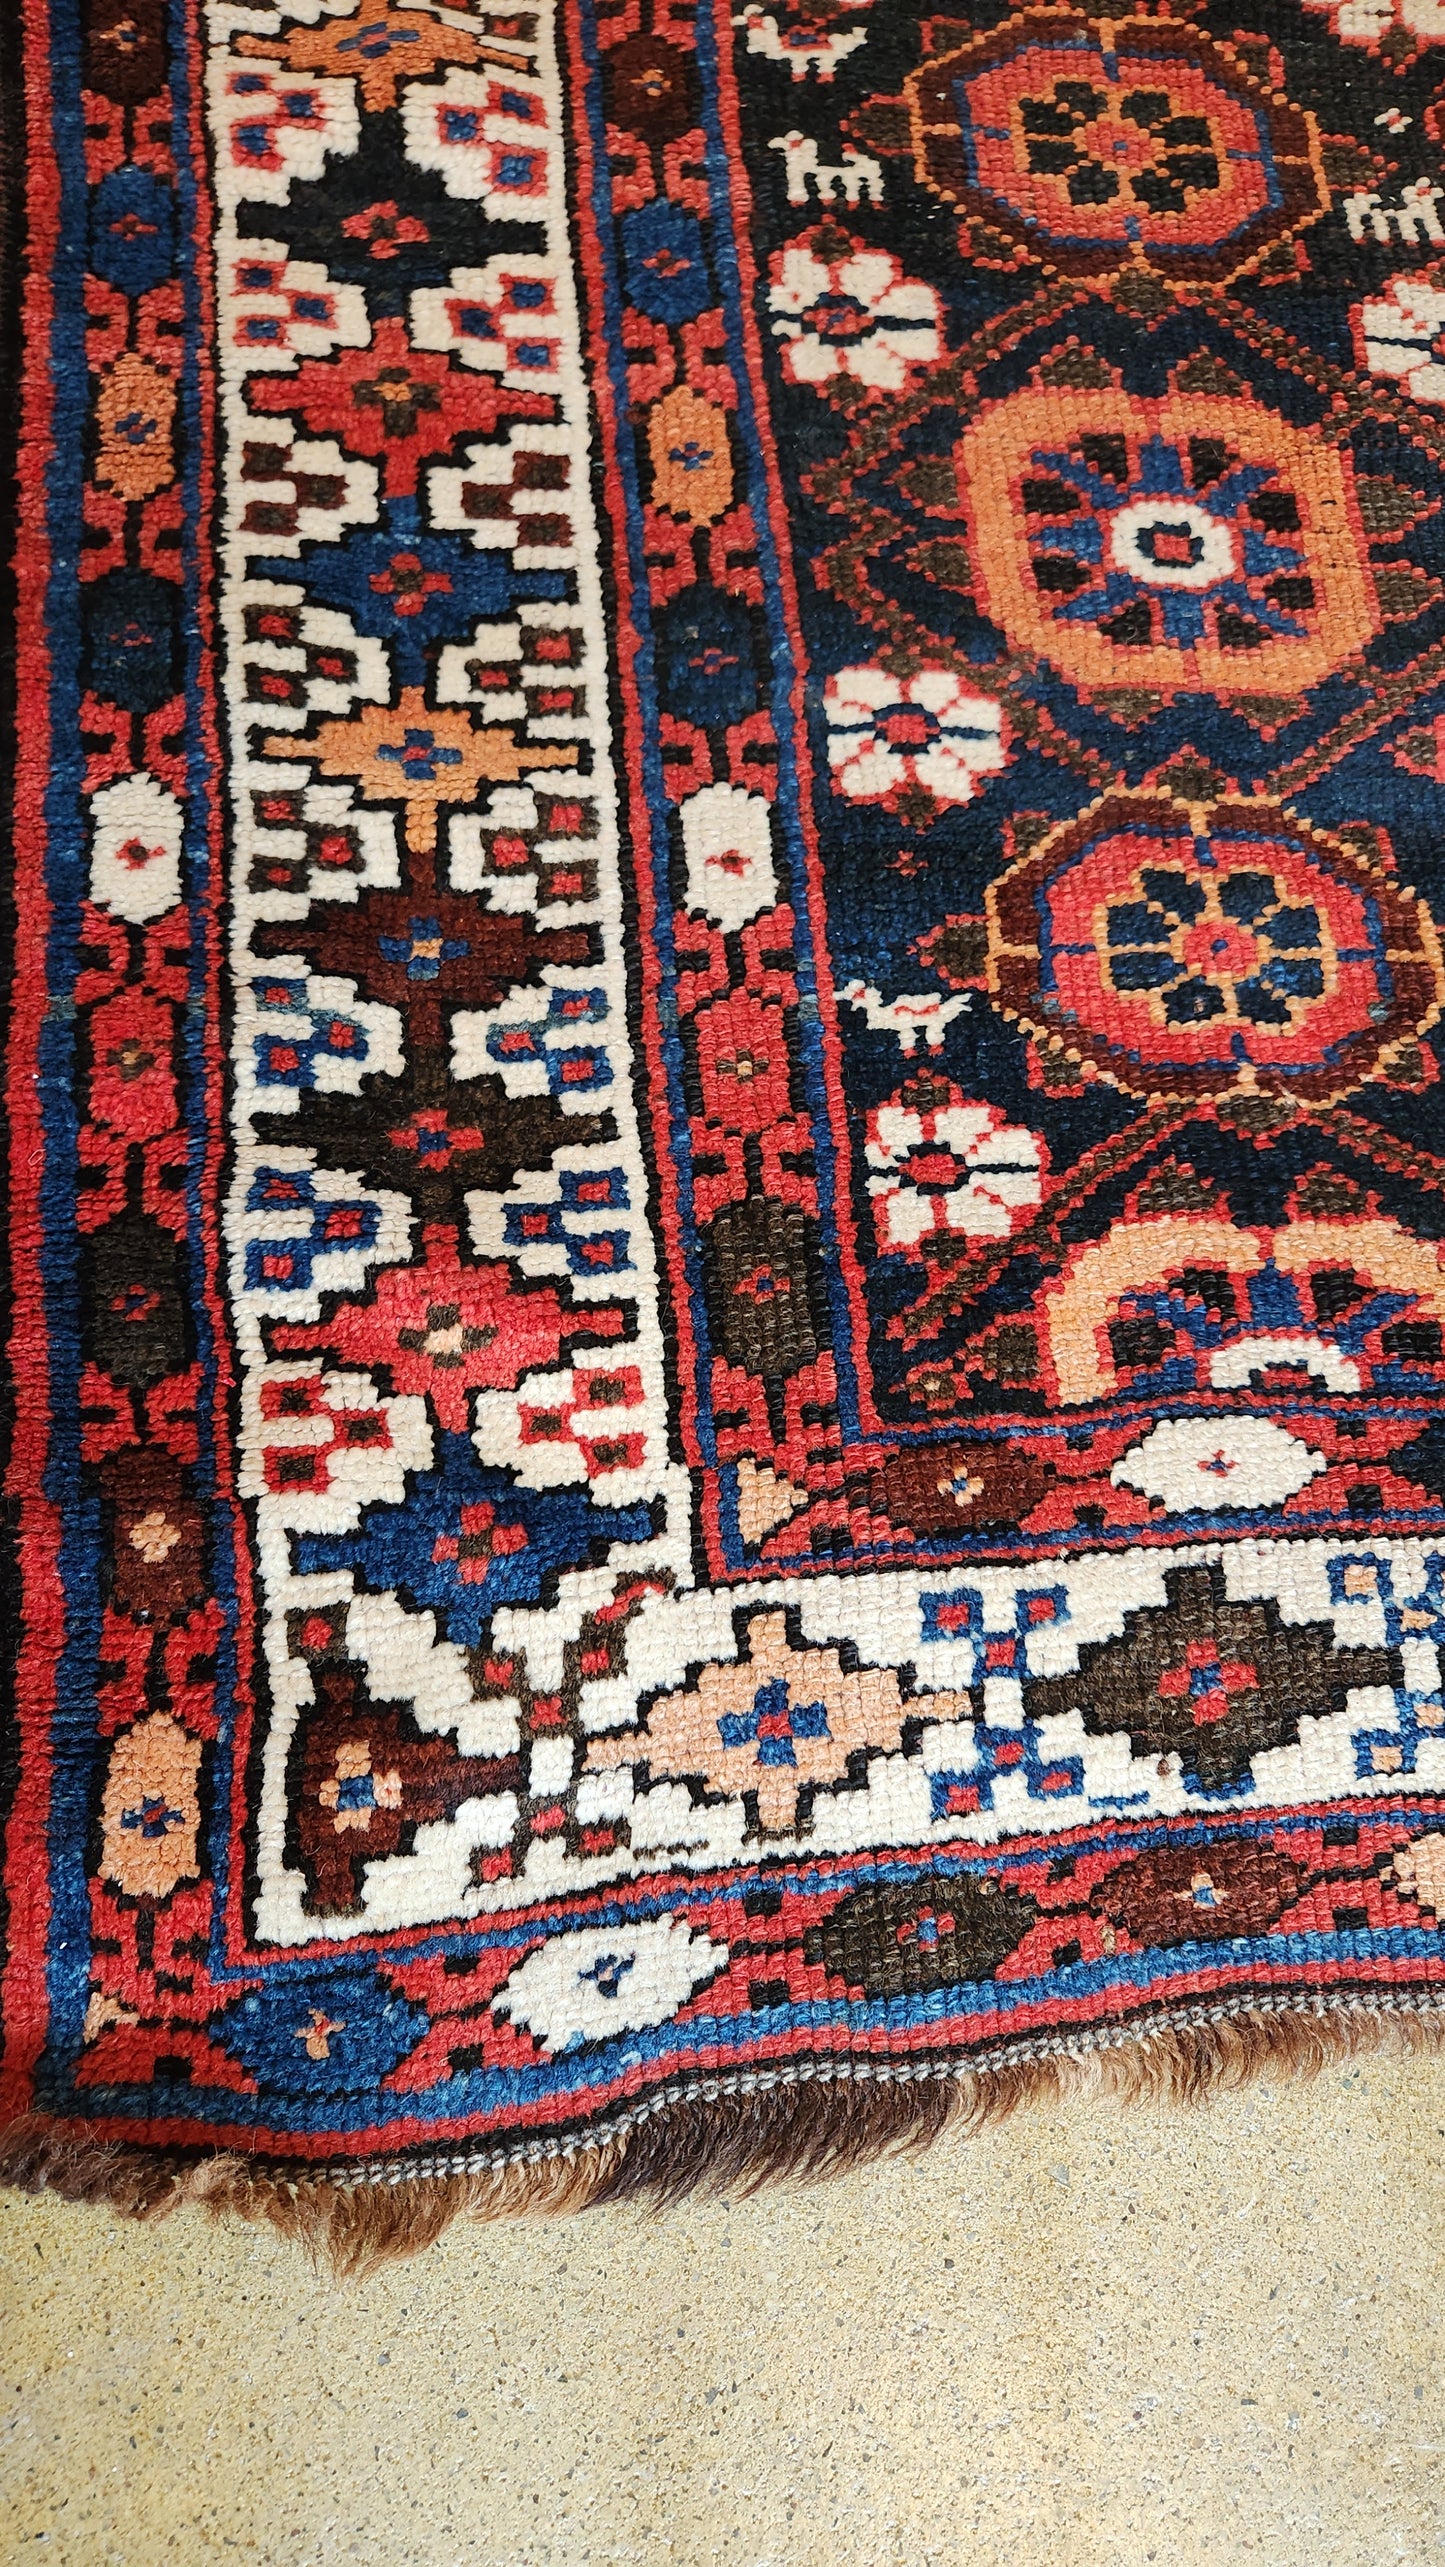 Semi-antique Varamin Persian rug, 1940s